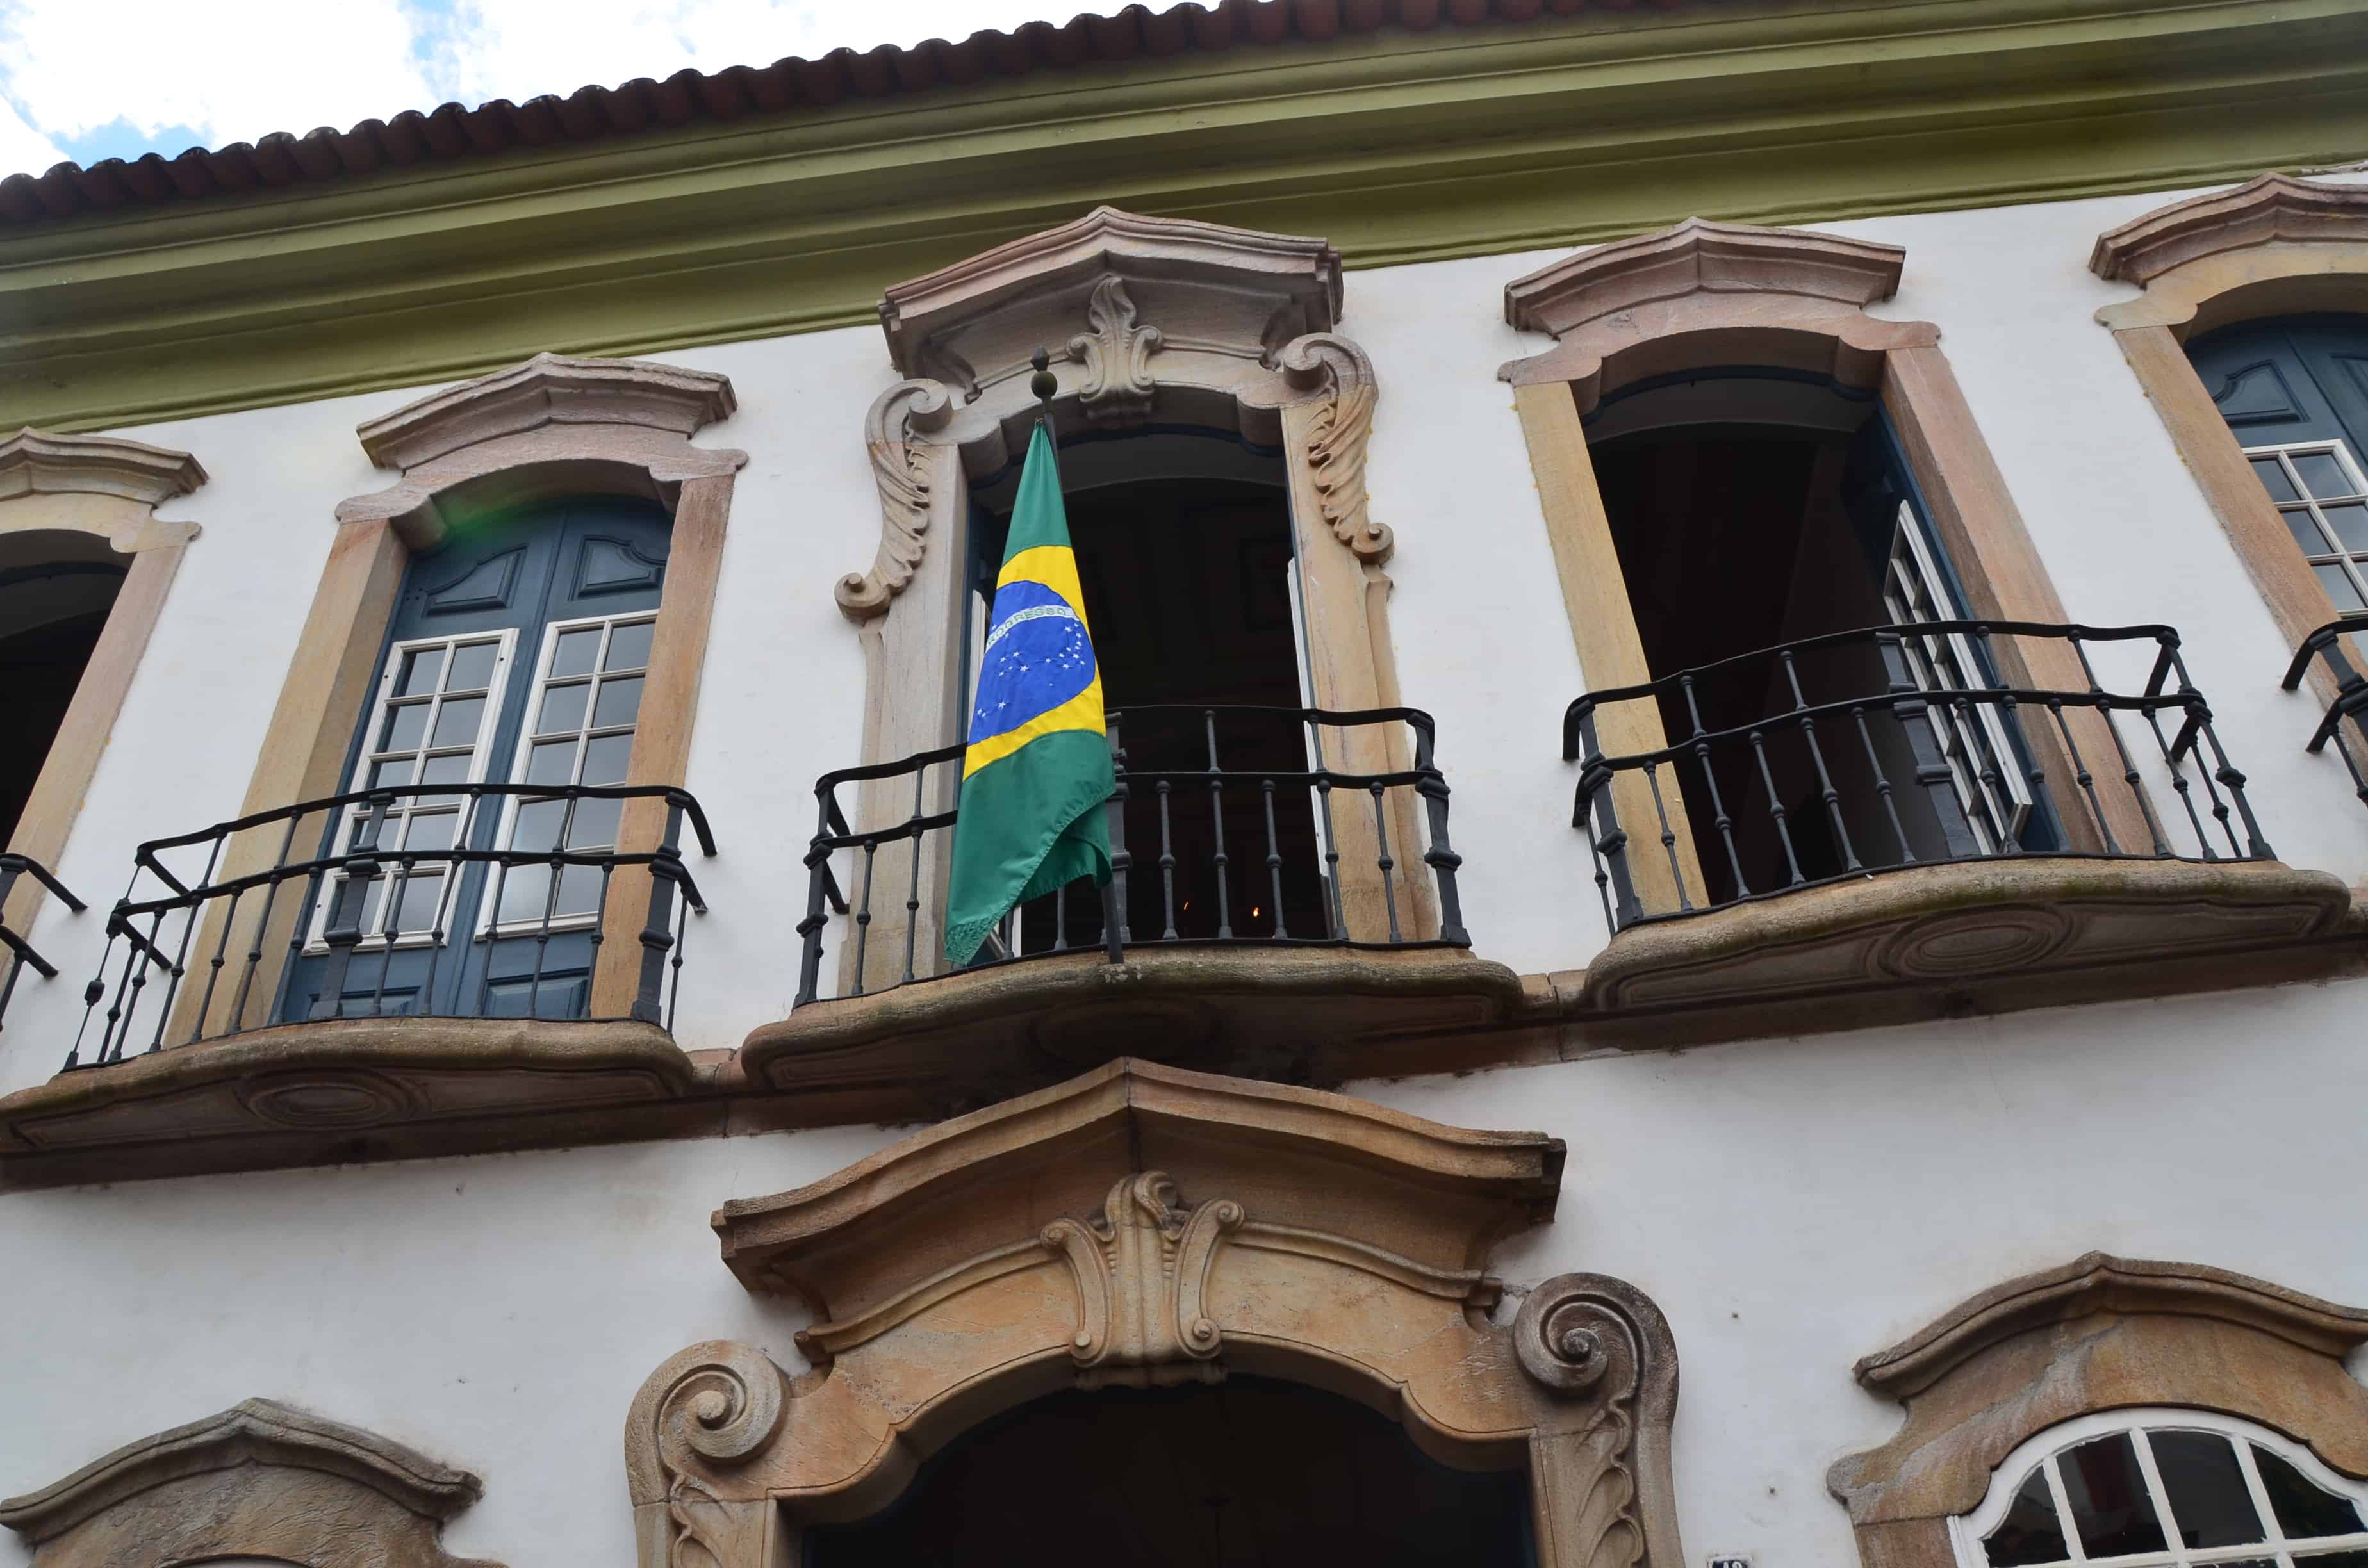 Casa dos Contos in Ouro Preto, Brazil